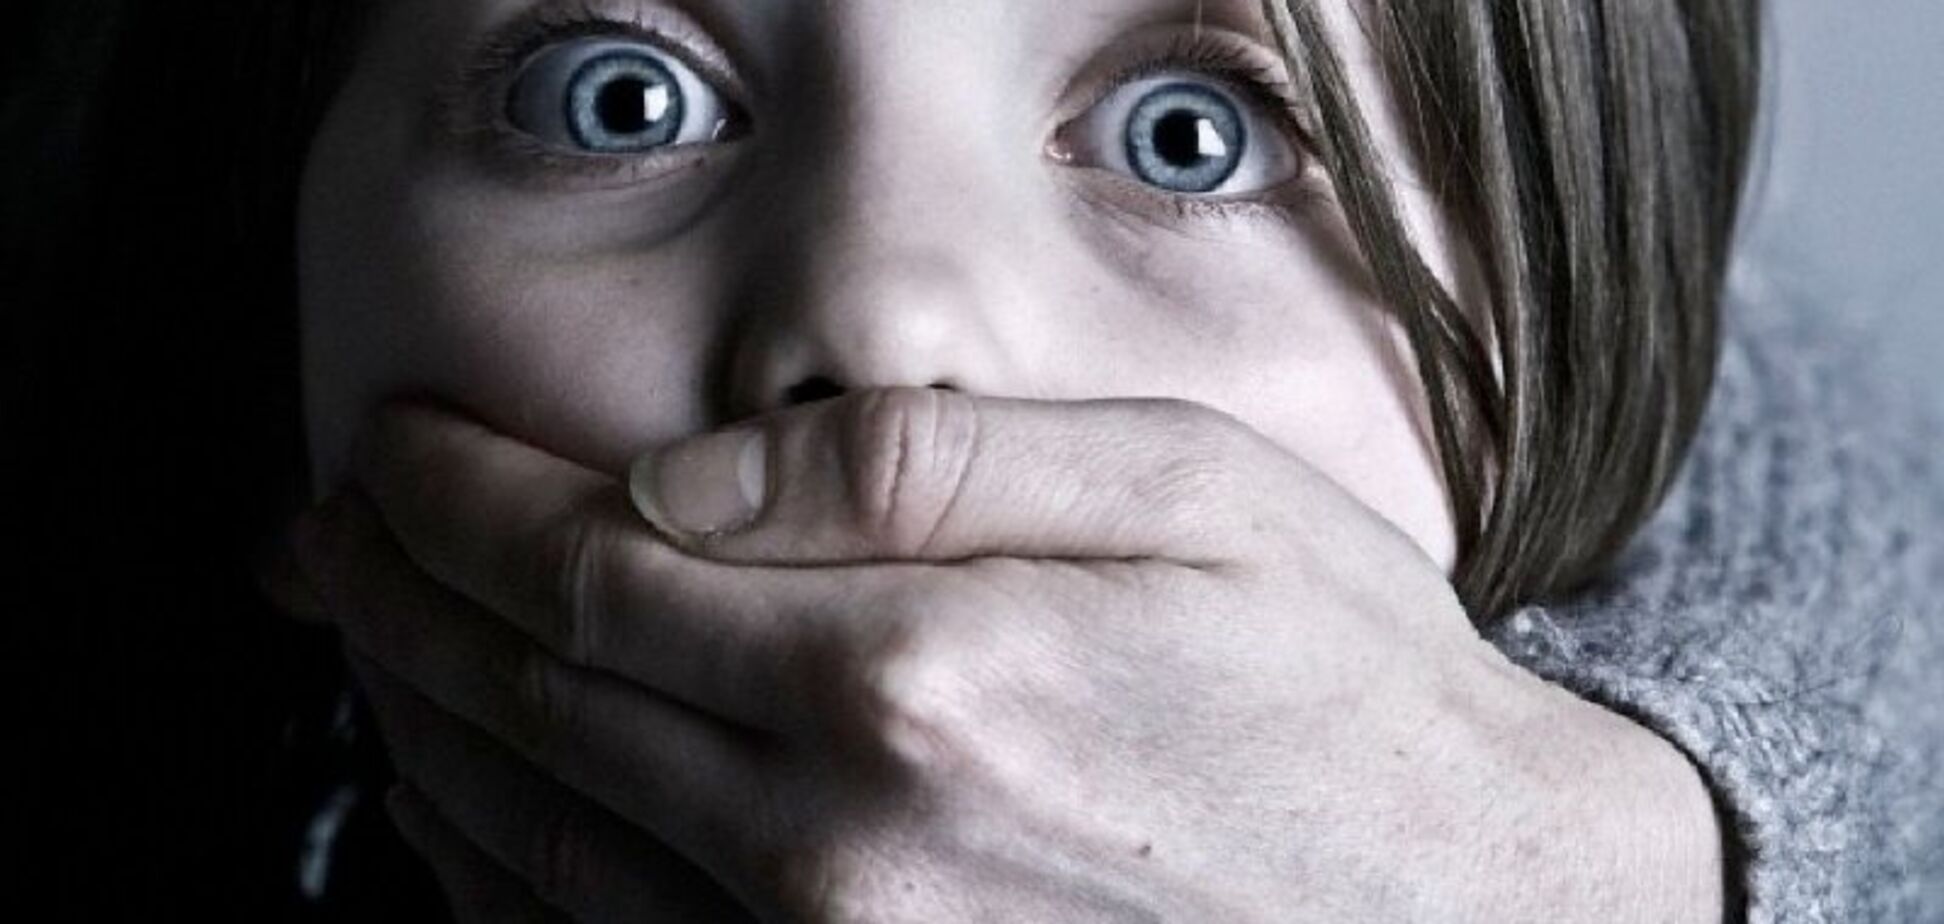 Заманивал сладостями: на Донетчине экс-сожитель матери зверски изнасиловал 11-летнюю девочку